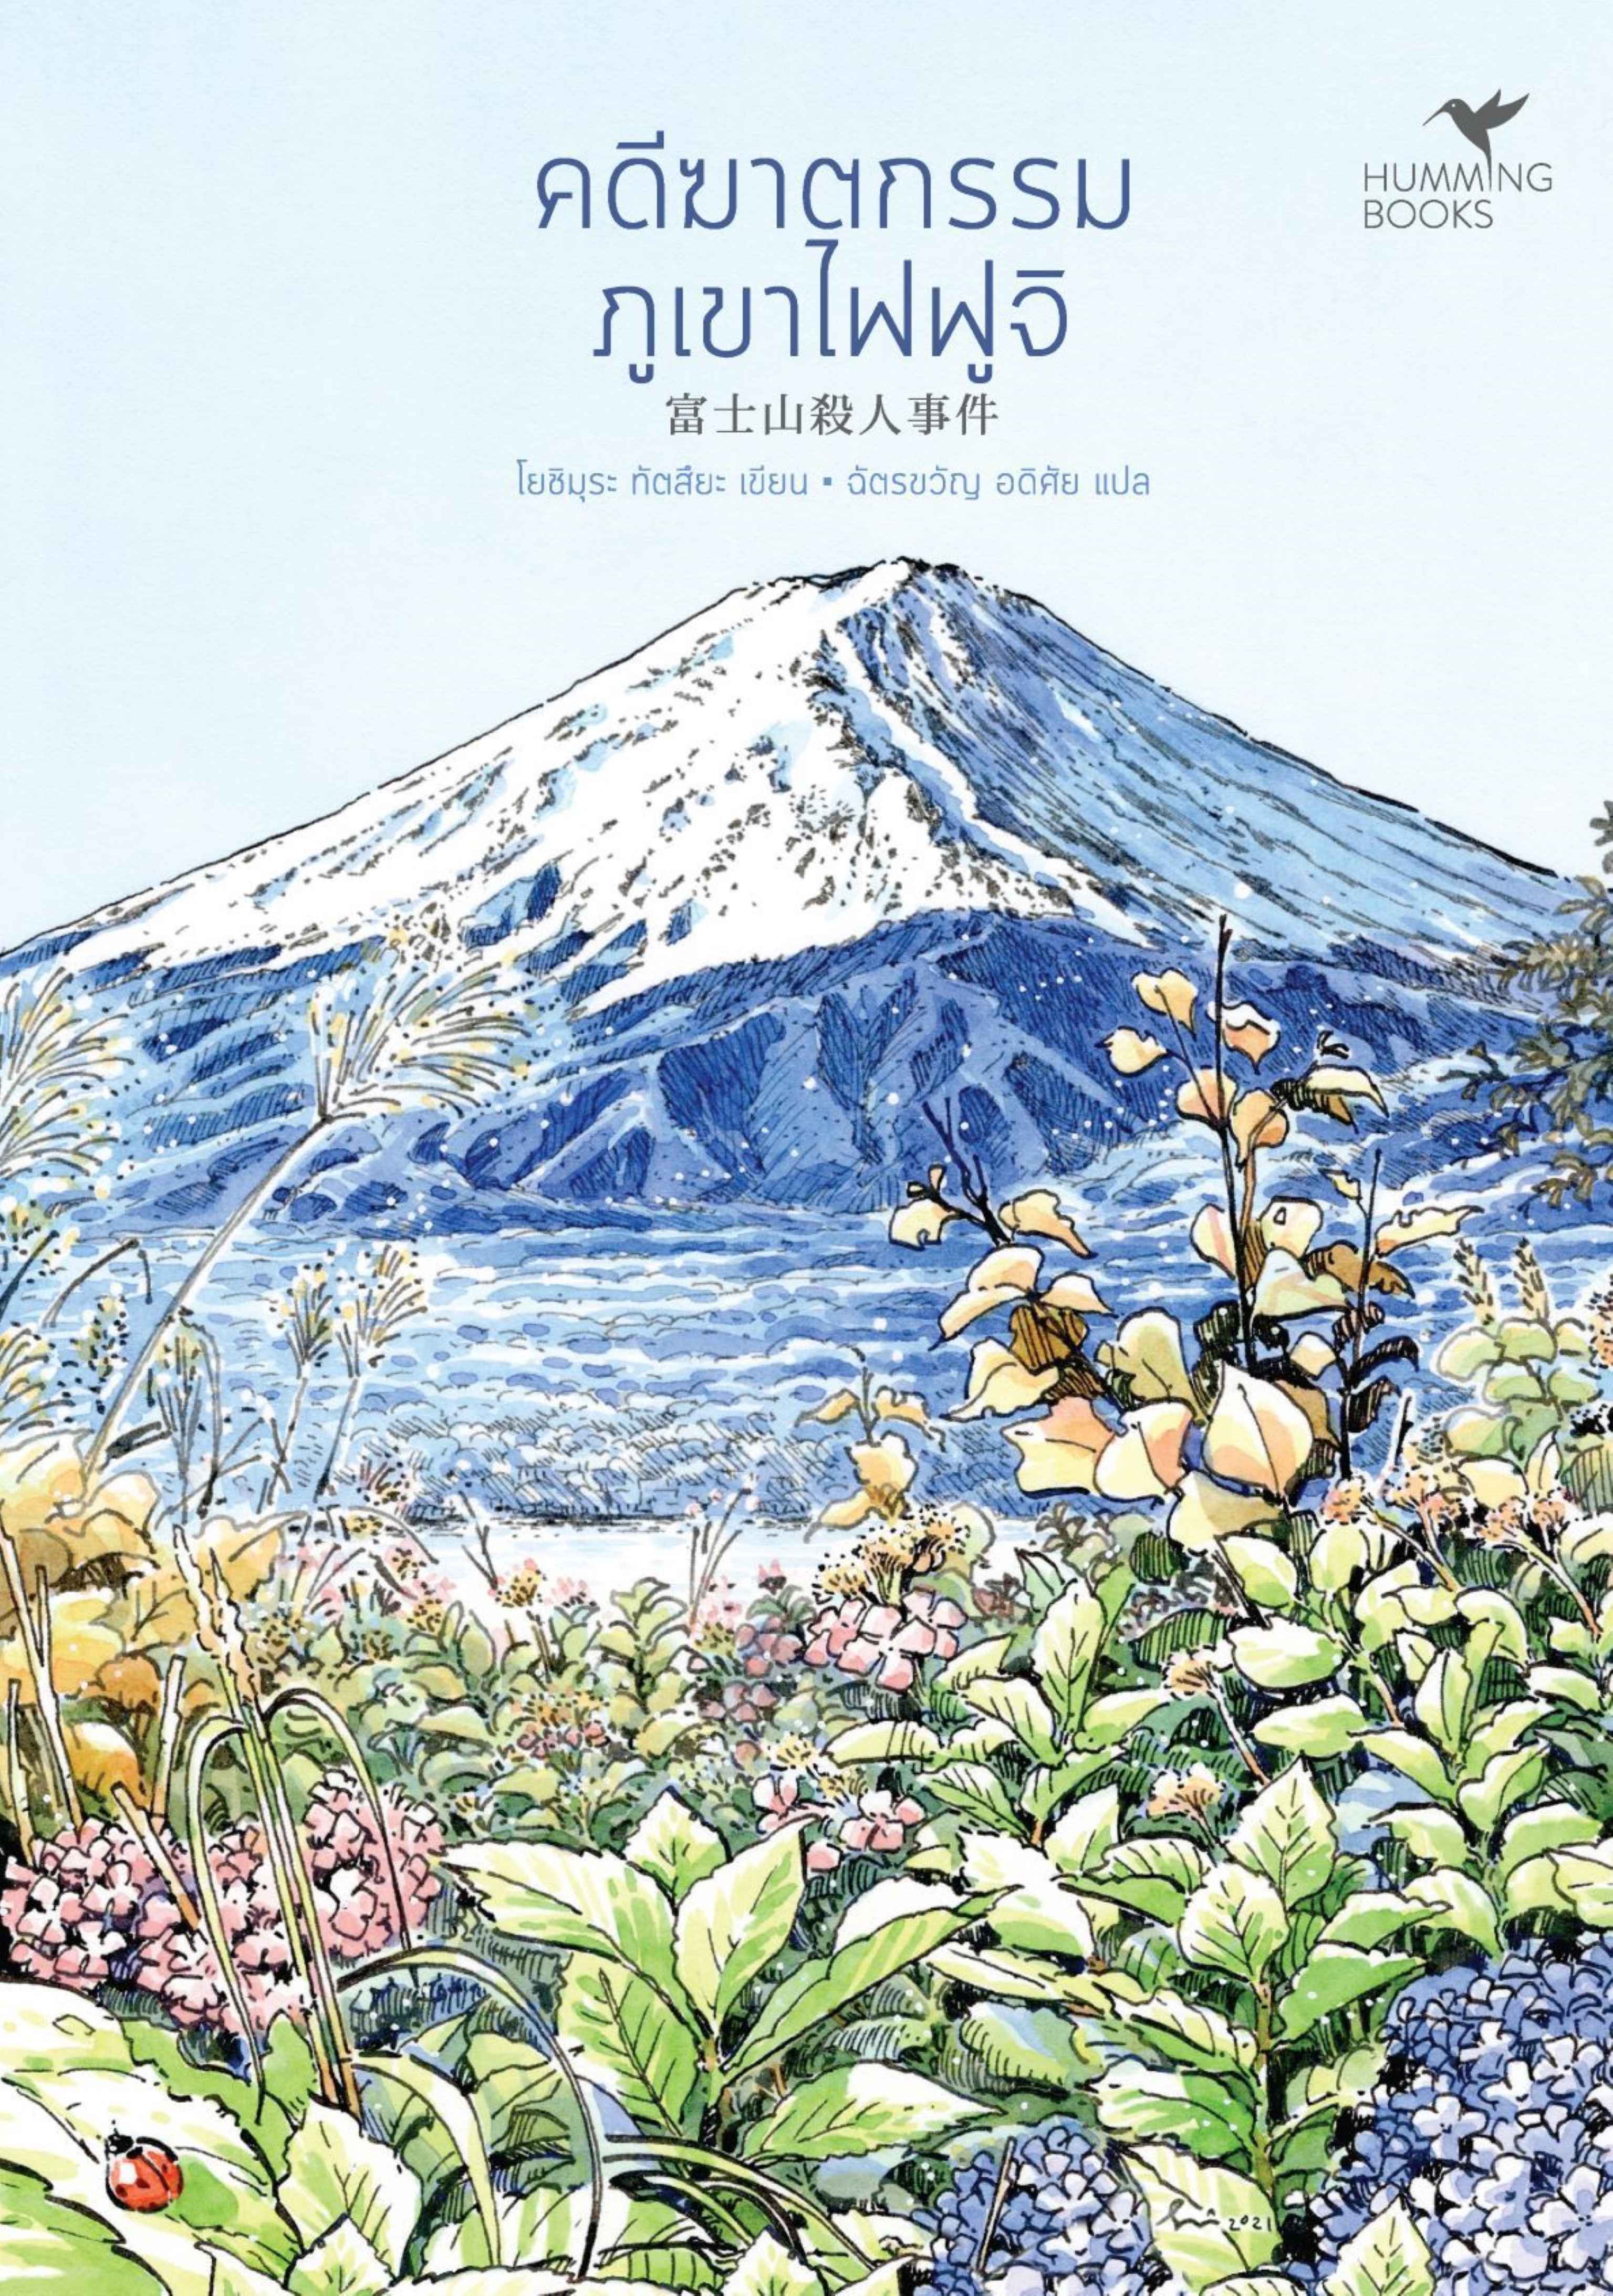 คดีฆาตกรรมภูเขาไฟฟูจิ 富士山殺人事件 / โยชิมุระ ทัตสึยะ เขียน / ฉัตรขวัญ อดิศัย แปล / Hummingbooks